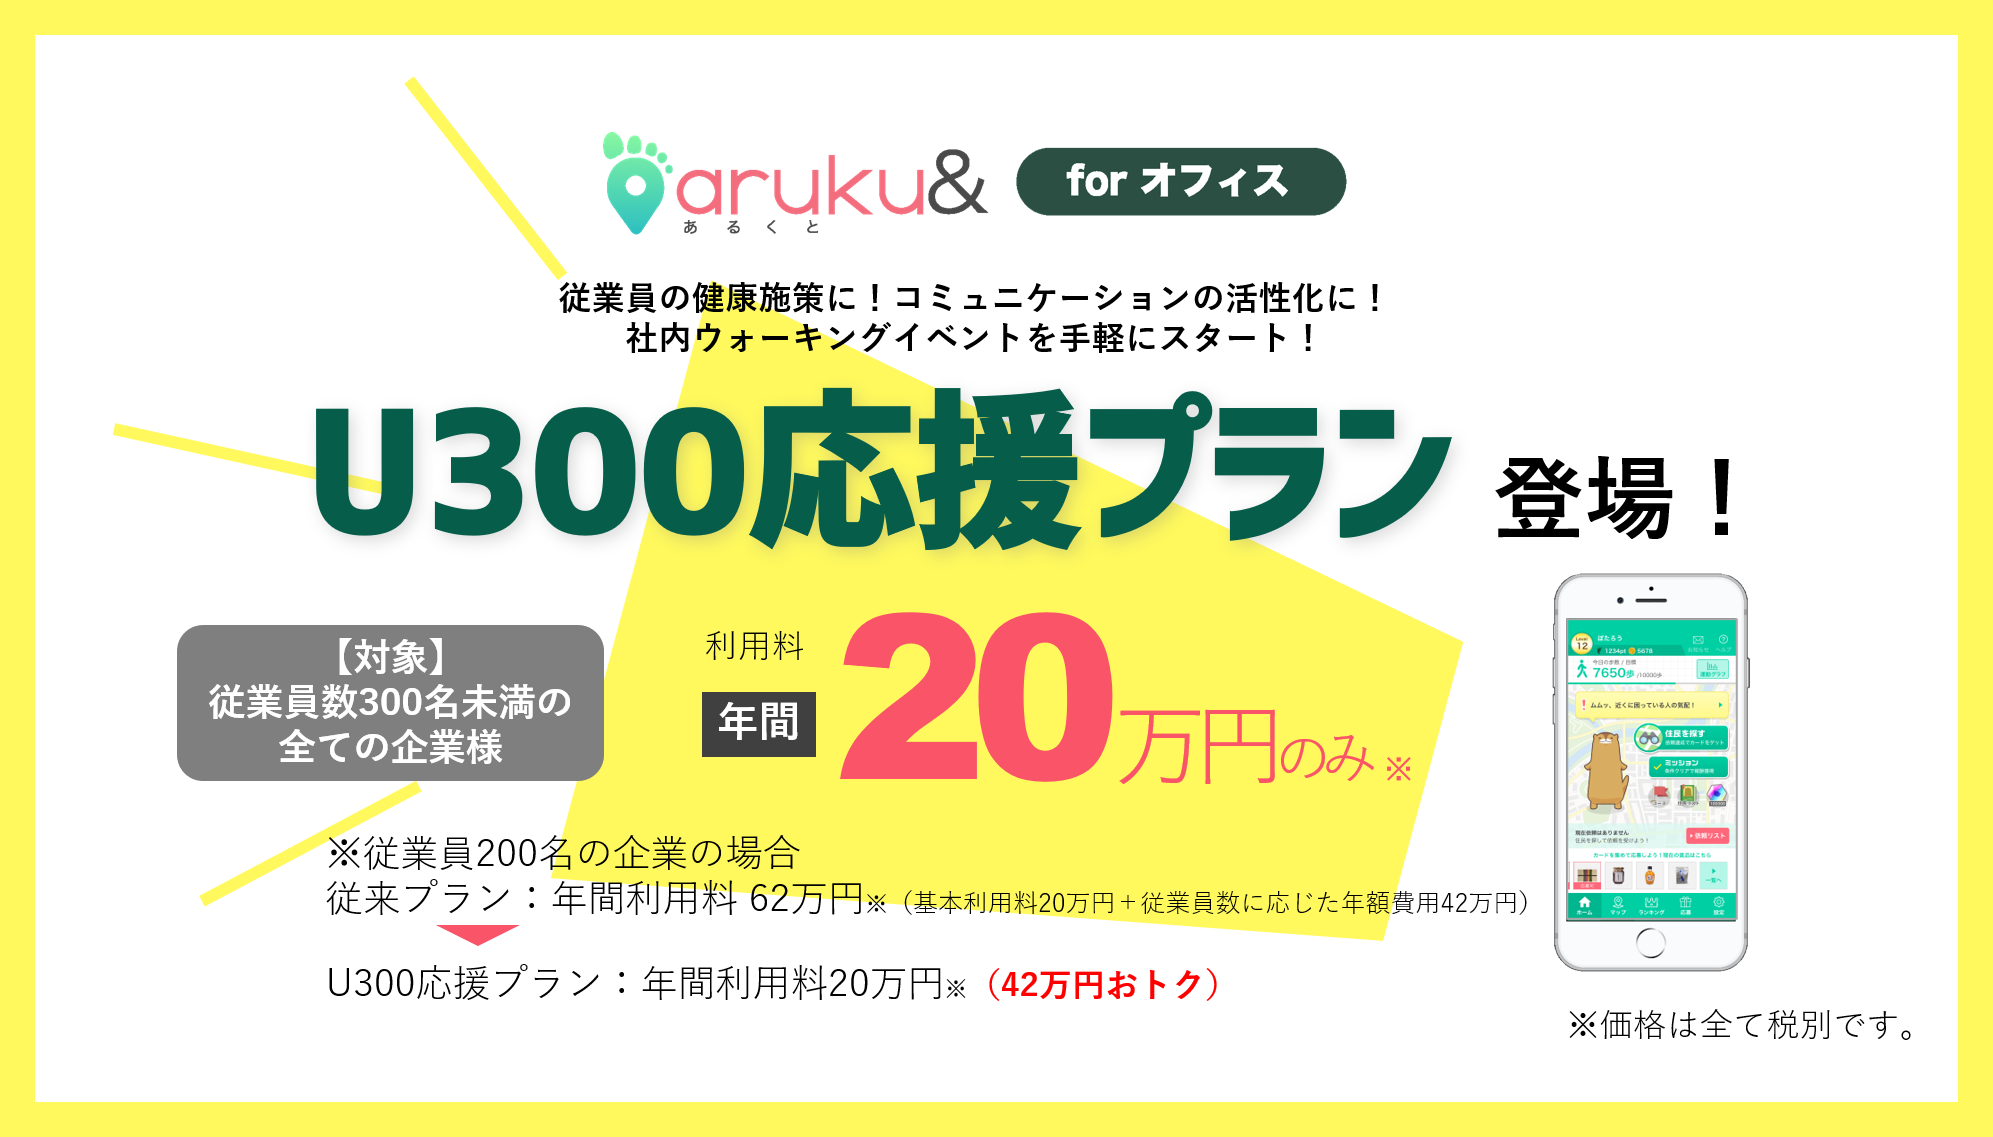 ウォーキングアプリ「aruku&」、中小企業応援プランの提供を開始